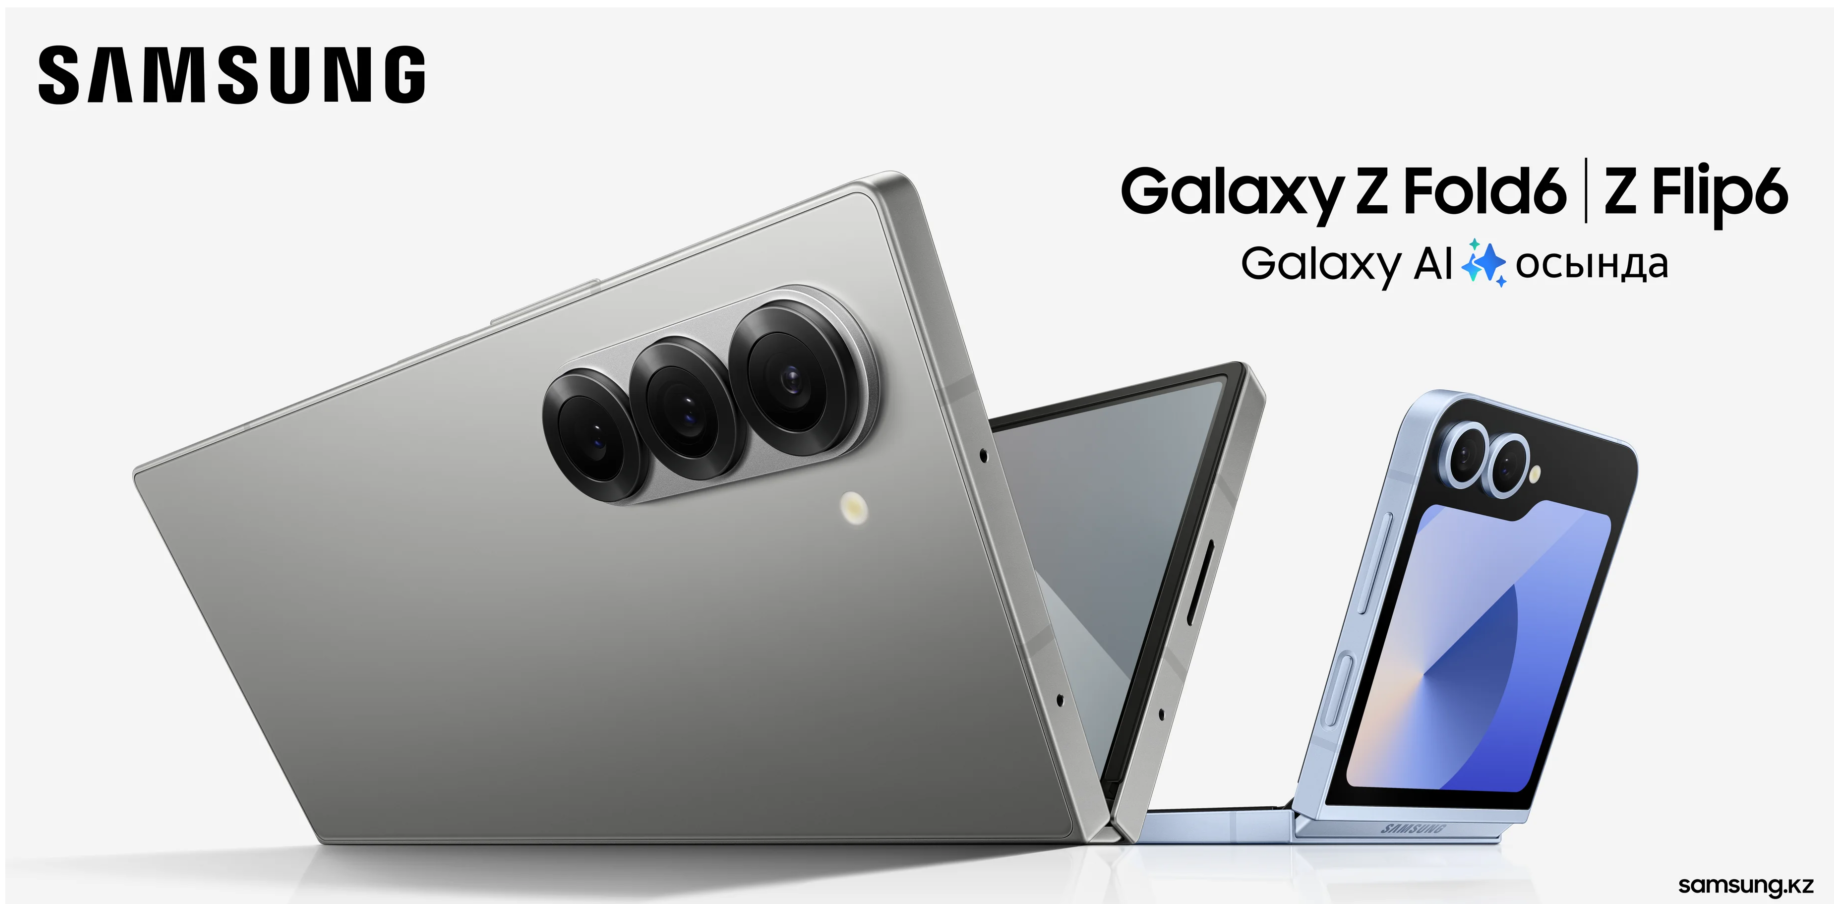 Samsung Galaxy Z Fold 6, Z Flip 6 появились в Интернете в просочившейся рекламе — фанаты счастливы и в ярости